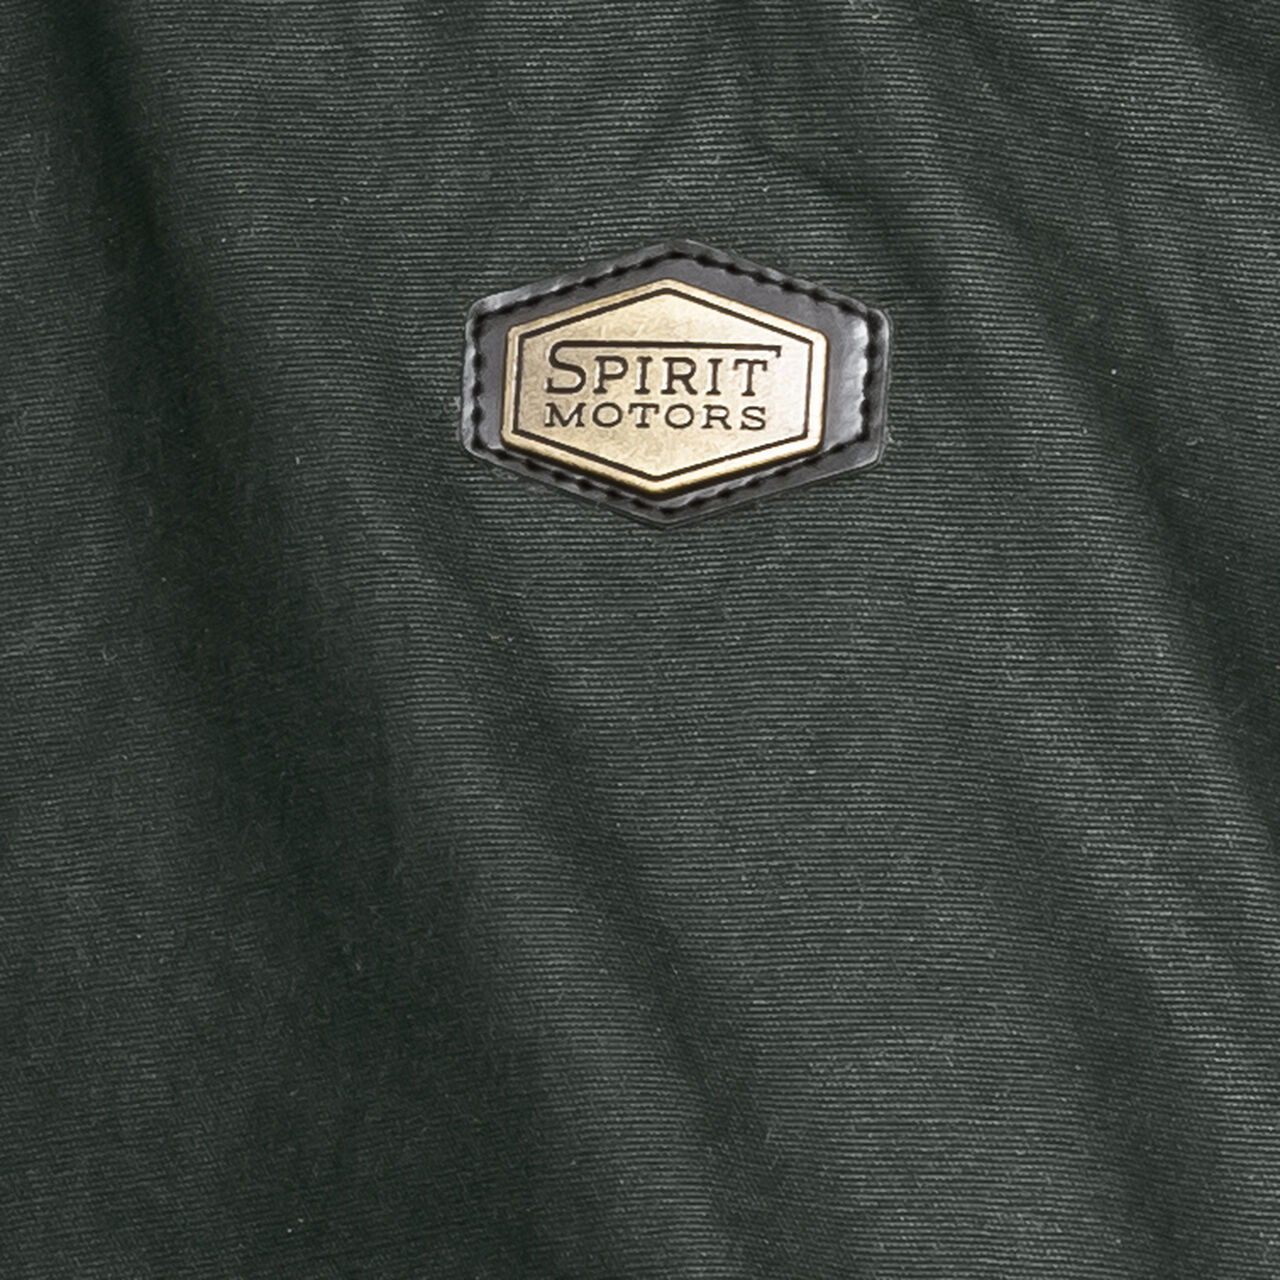 Retro style textile jacket 1.0 green